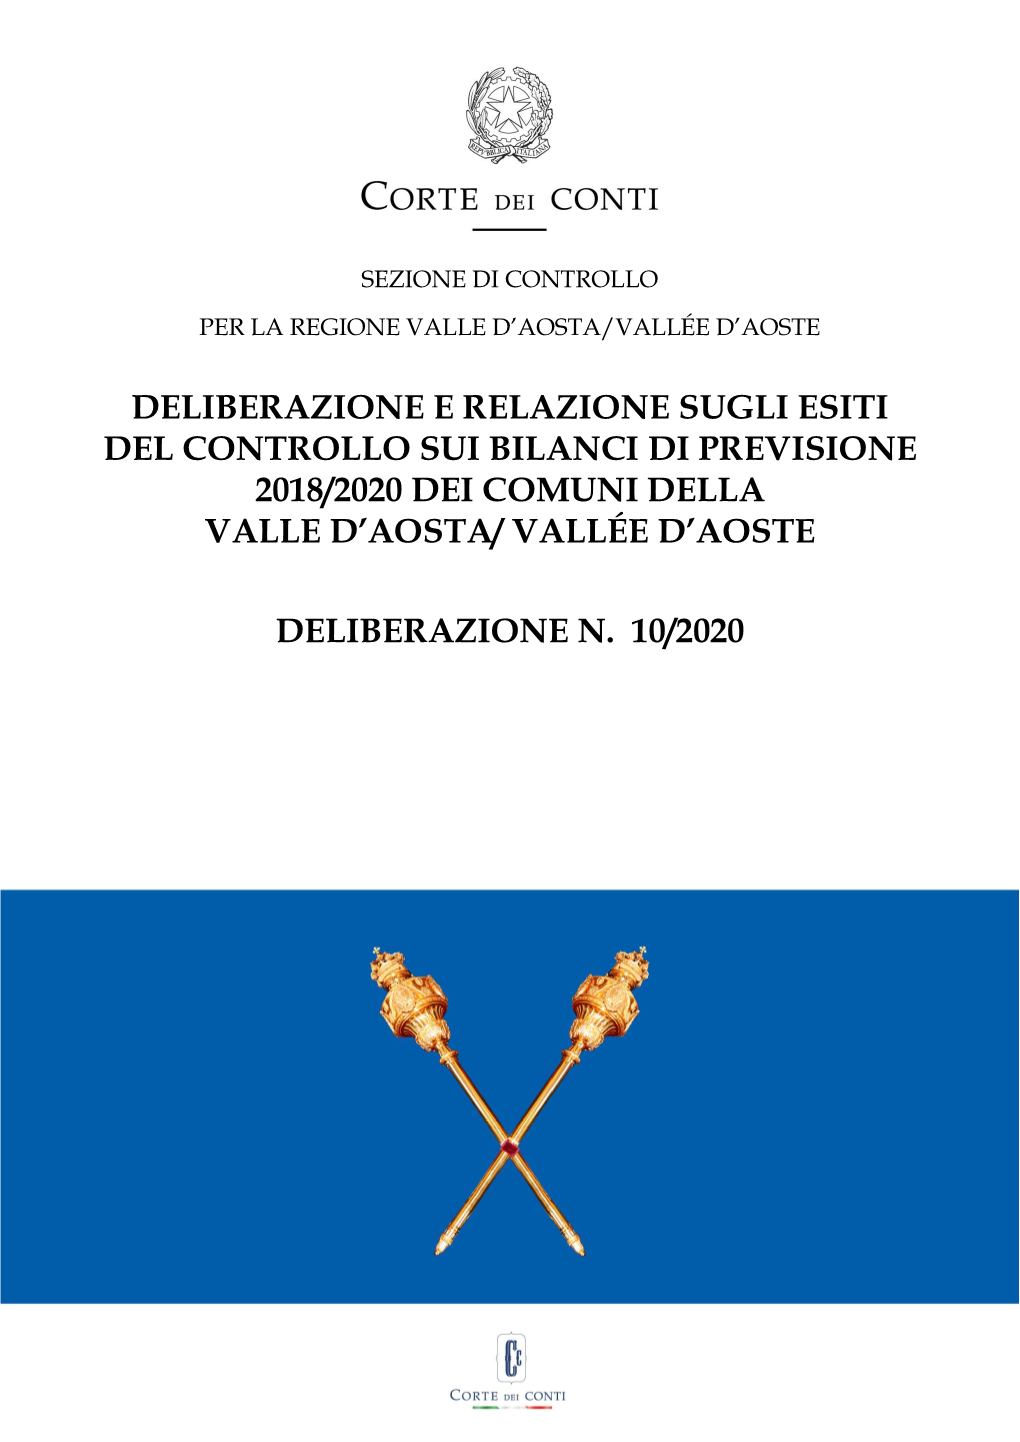 Deliberazione E Relazione Sugli Esiti Del Controllo Sui Bilanci Di Previsione 2018/2020 Dei Comuni Della Valle D'aosta